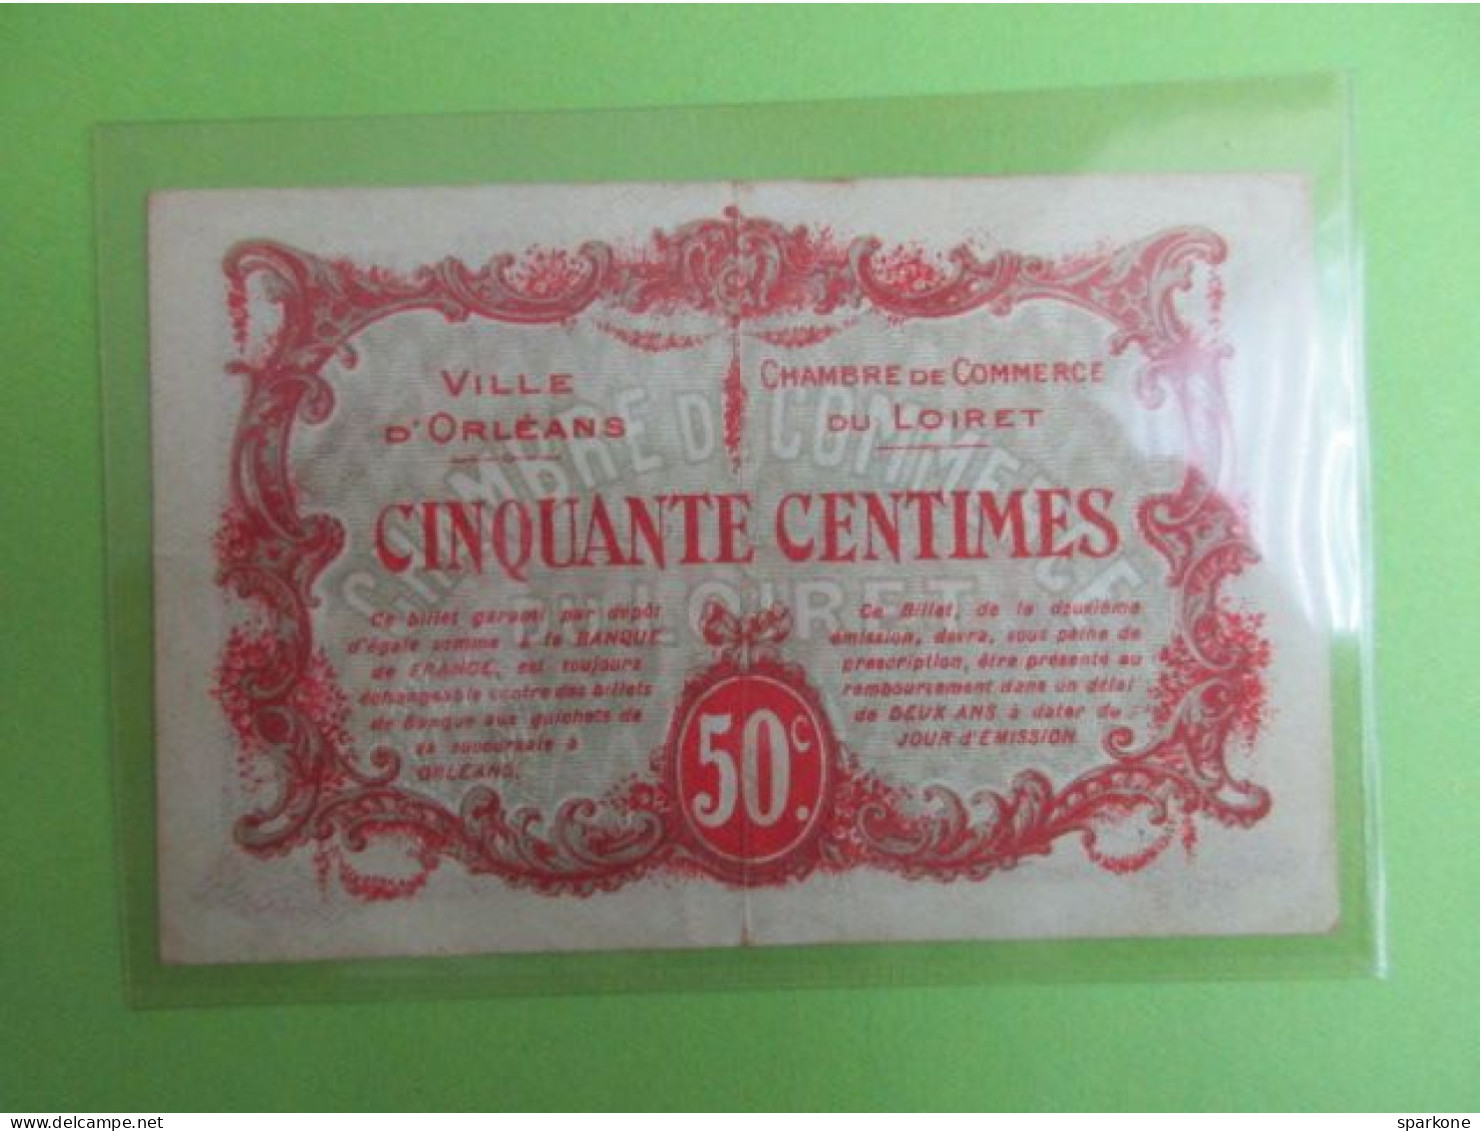 Chambre De Commerce Et Ville D'Orléans - Billet De 50 Centimes - 2° émission - 2 Avril 1916 - Chambre De Commerce